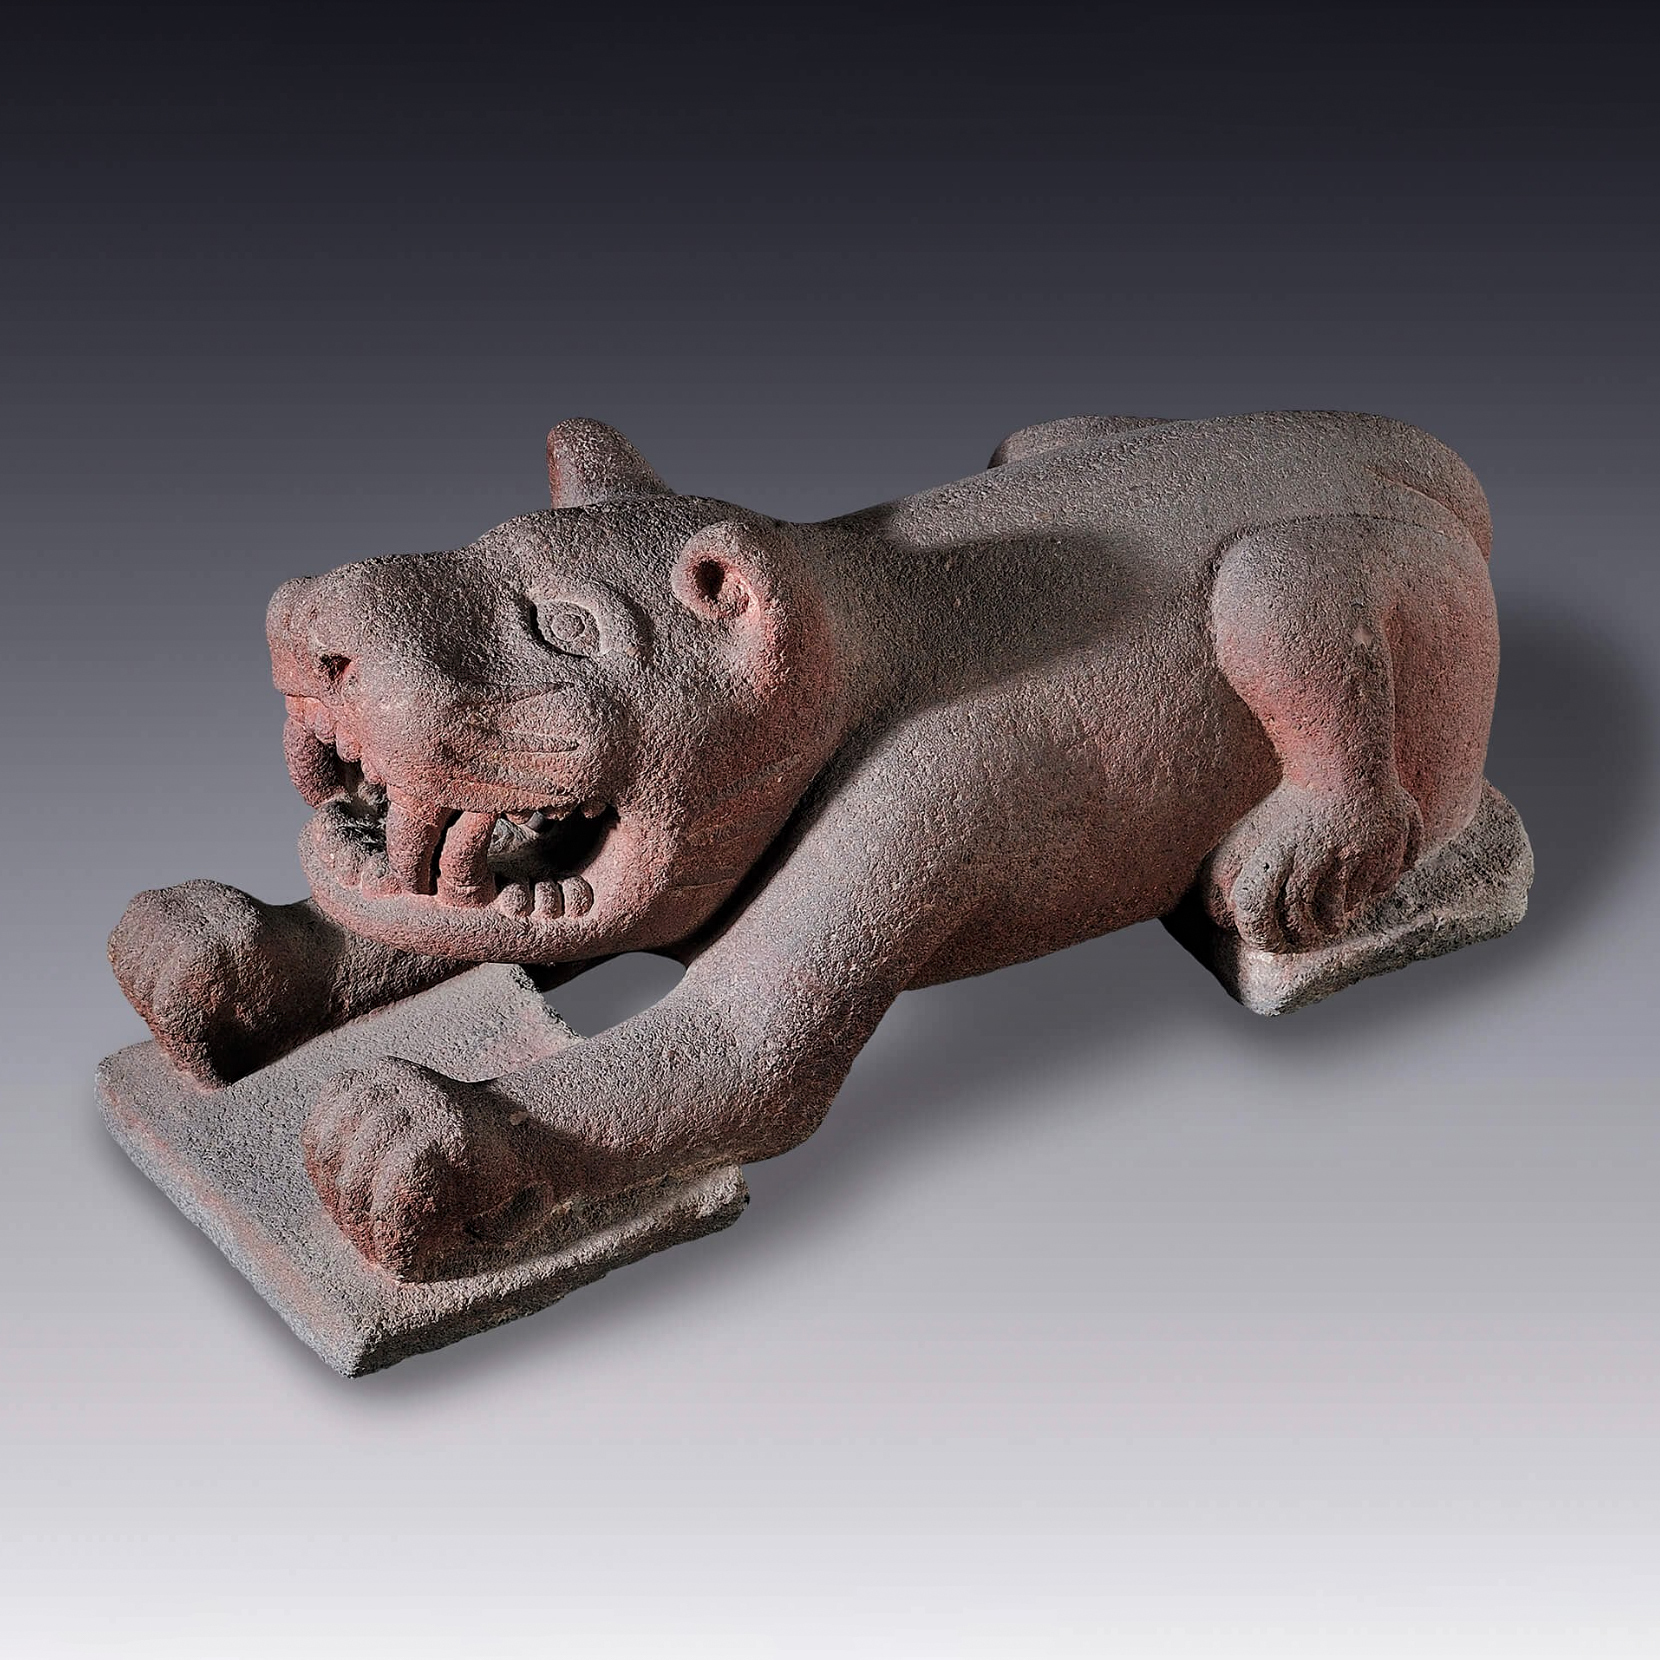 Хищная кошка. Мезоамерика, 1345-1521 гг. н.э. Коллекция Museo Amparo, Puebla.